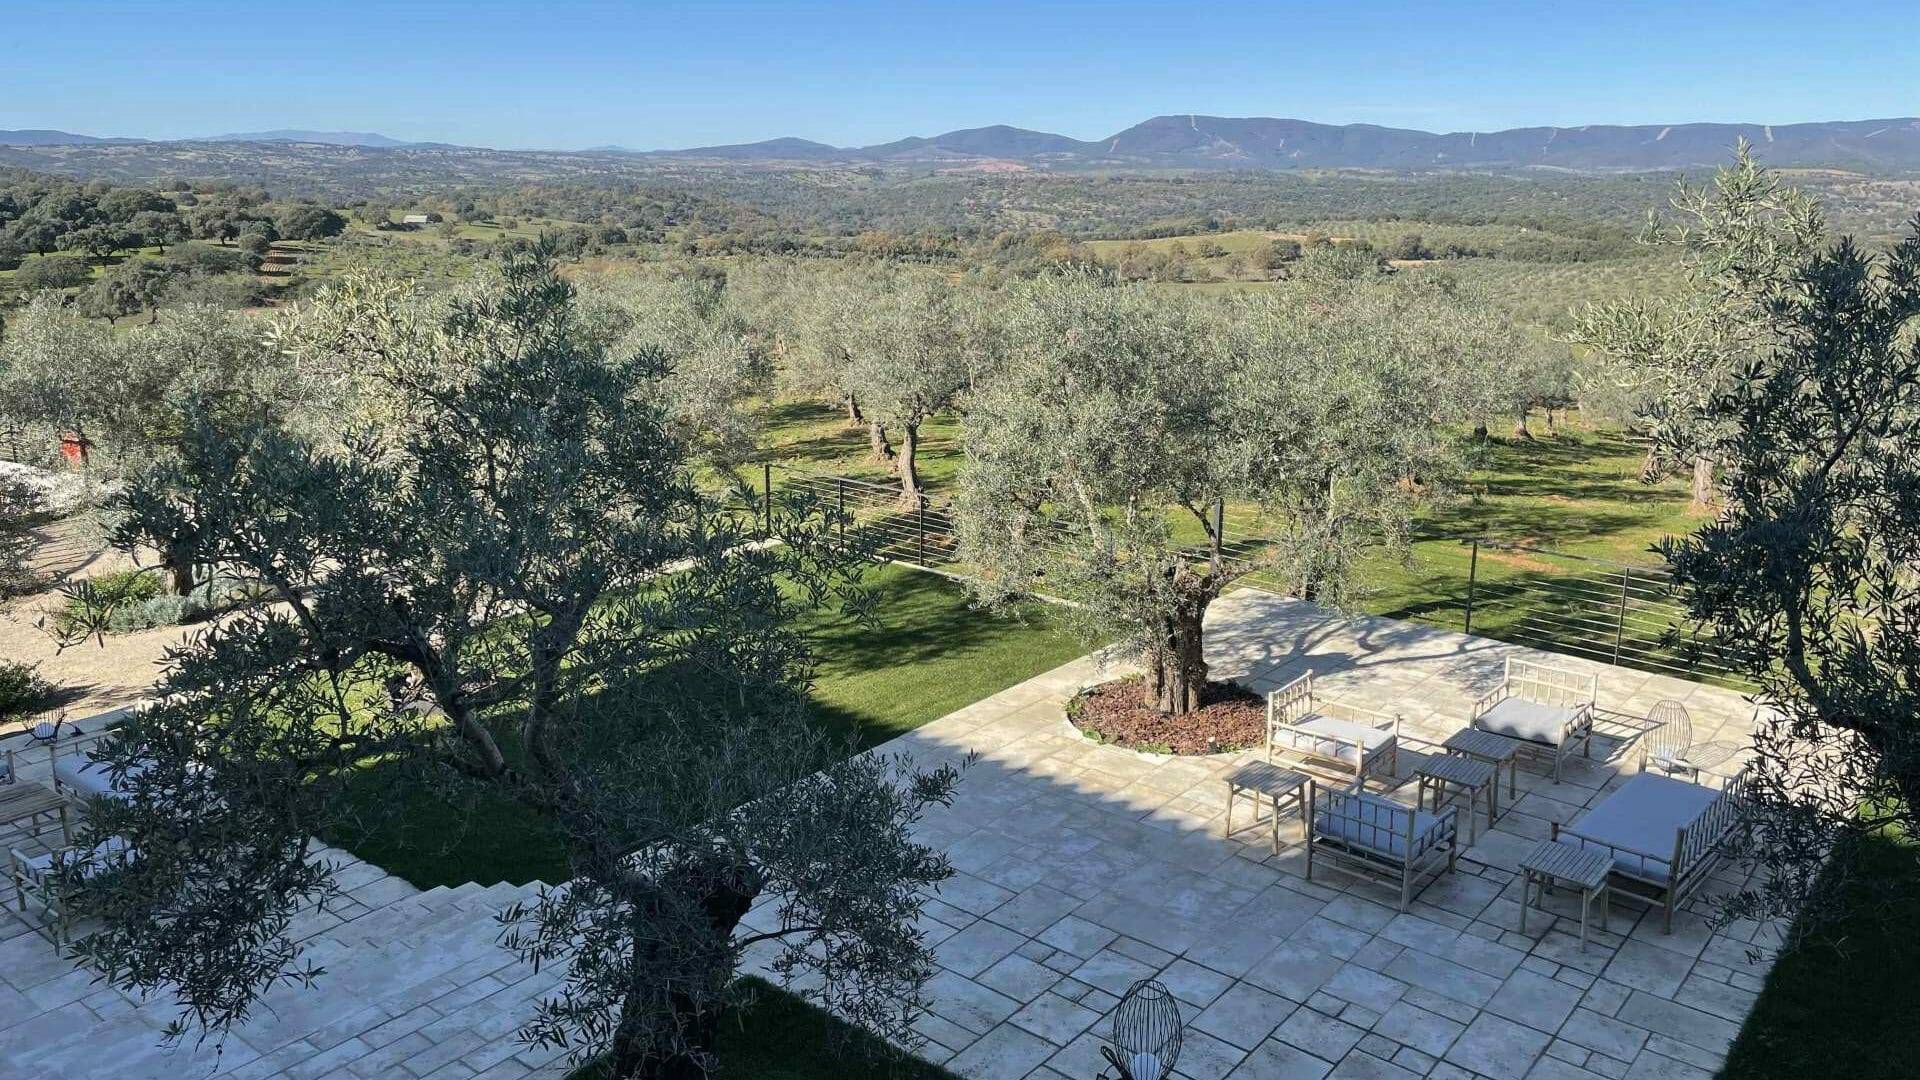 El olivar ecológico de aceituna manzanilla cacereña, el jardín más bello del hotel.